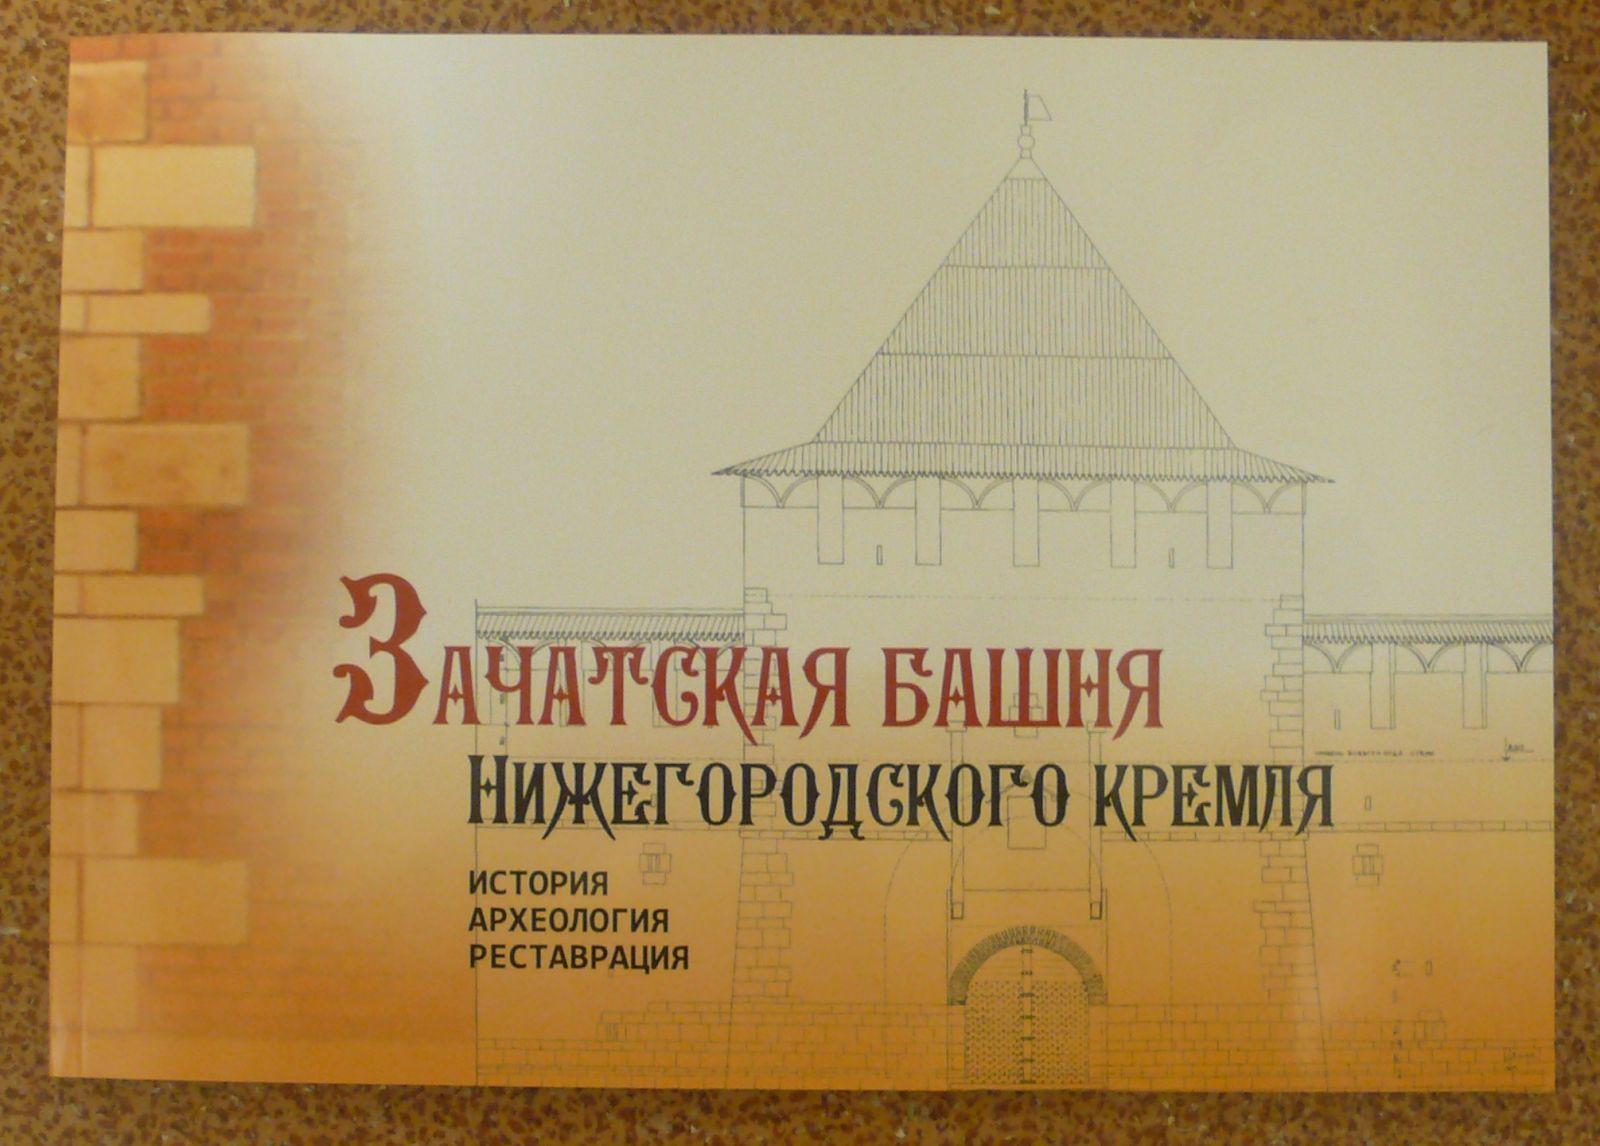 Вышел в свет альбом-буклет «Зачатская башня Нижегородского кремля. История, археология, реставрация»